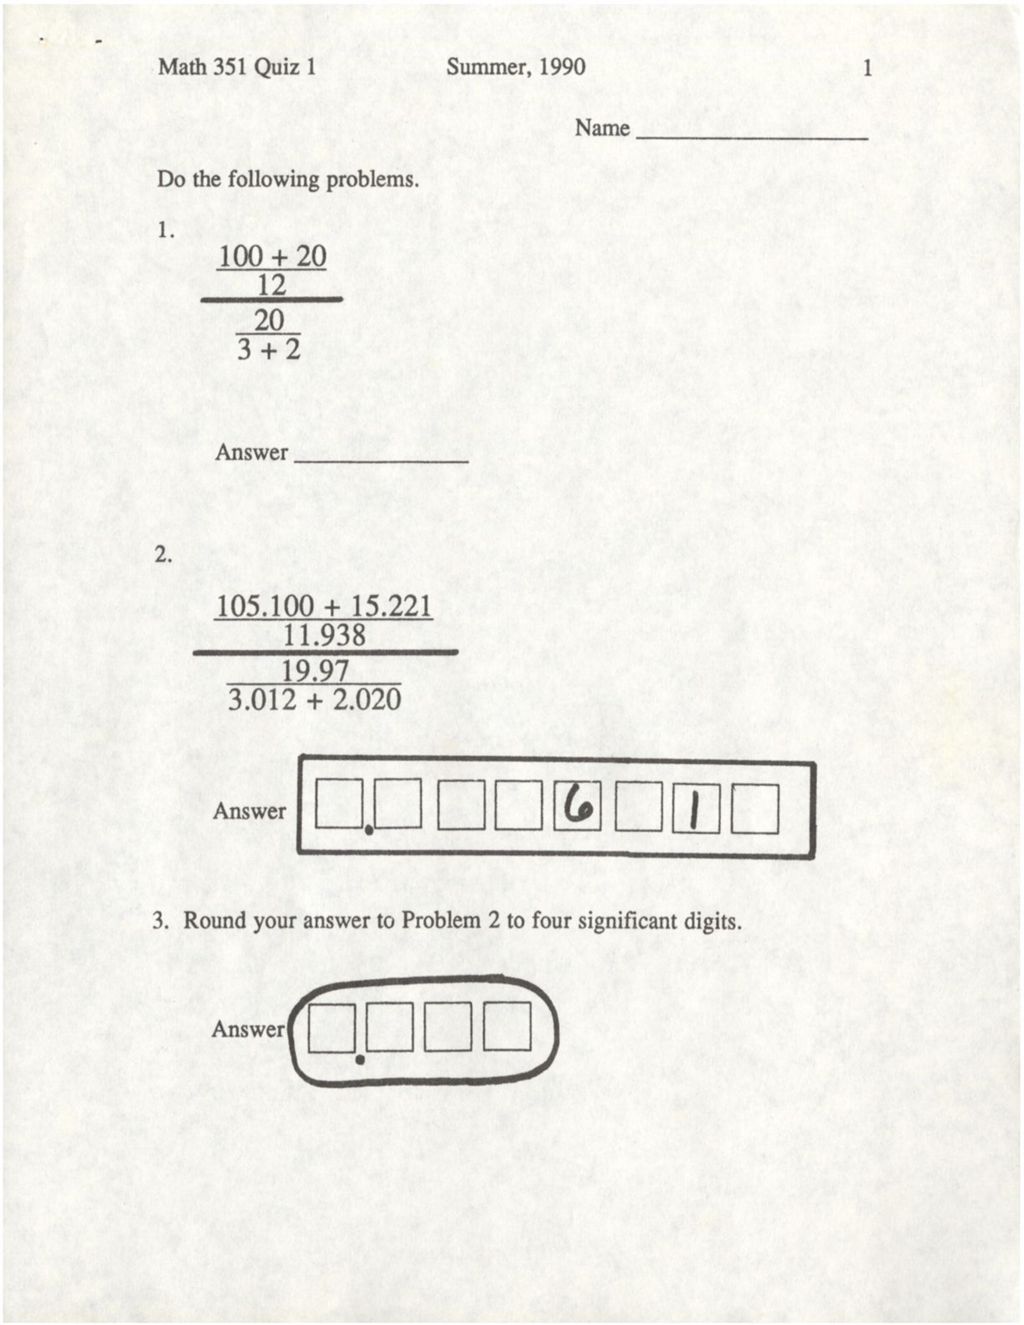 Math 351 Quiz 1 (1990)